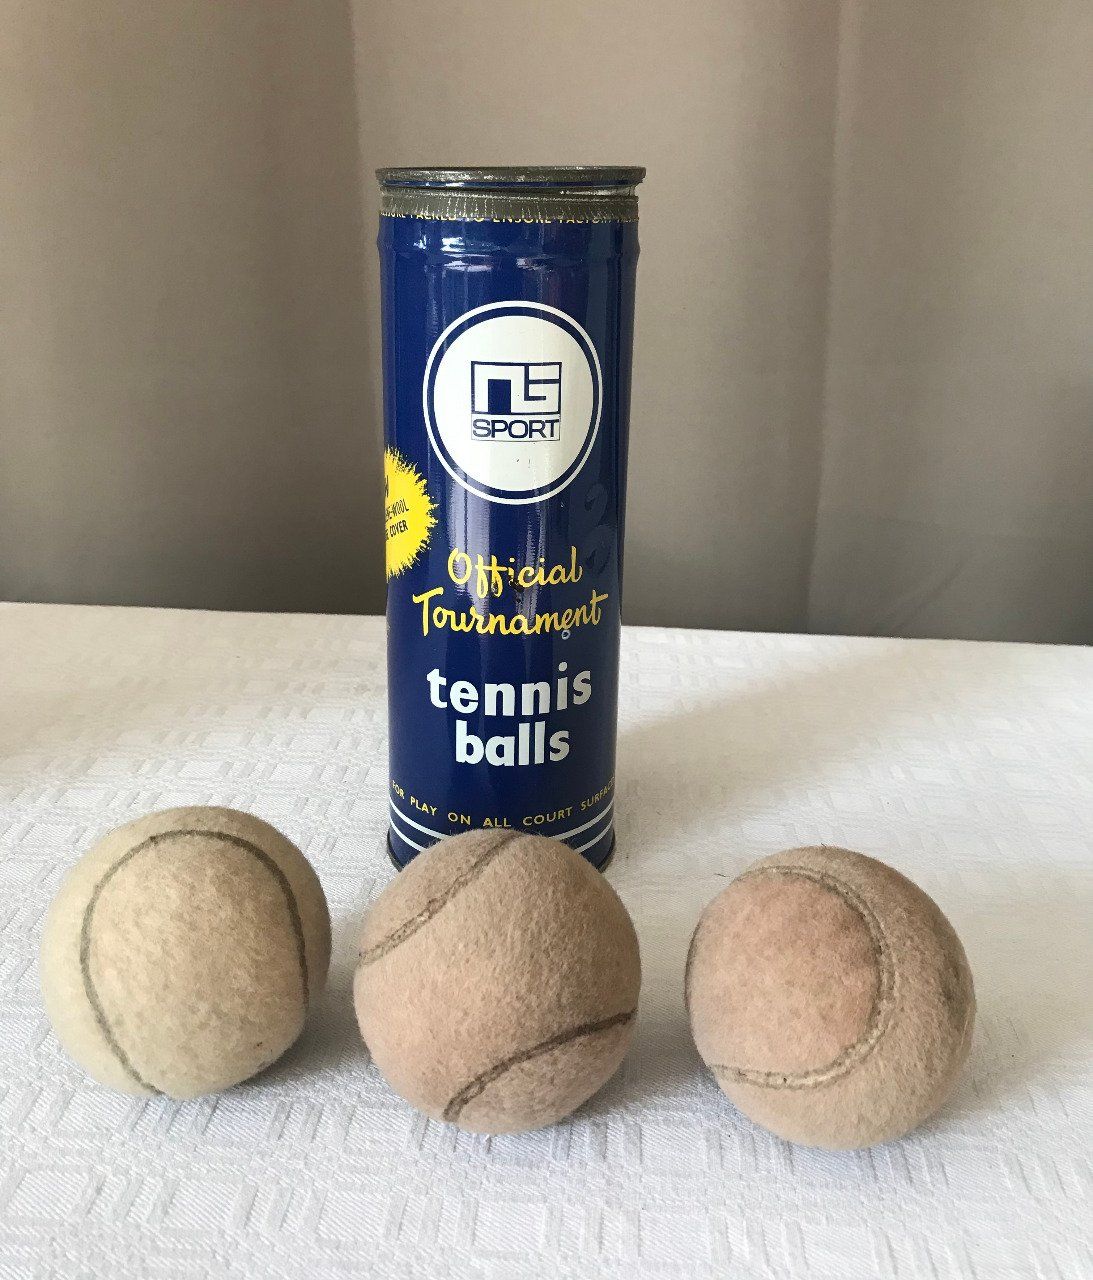 Ancienne Boite en métal + 3 balles de tennis blanches, NG Sport, Official Tournament tennis ball